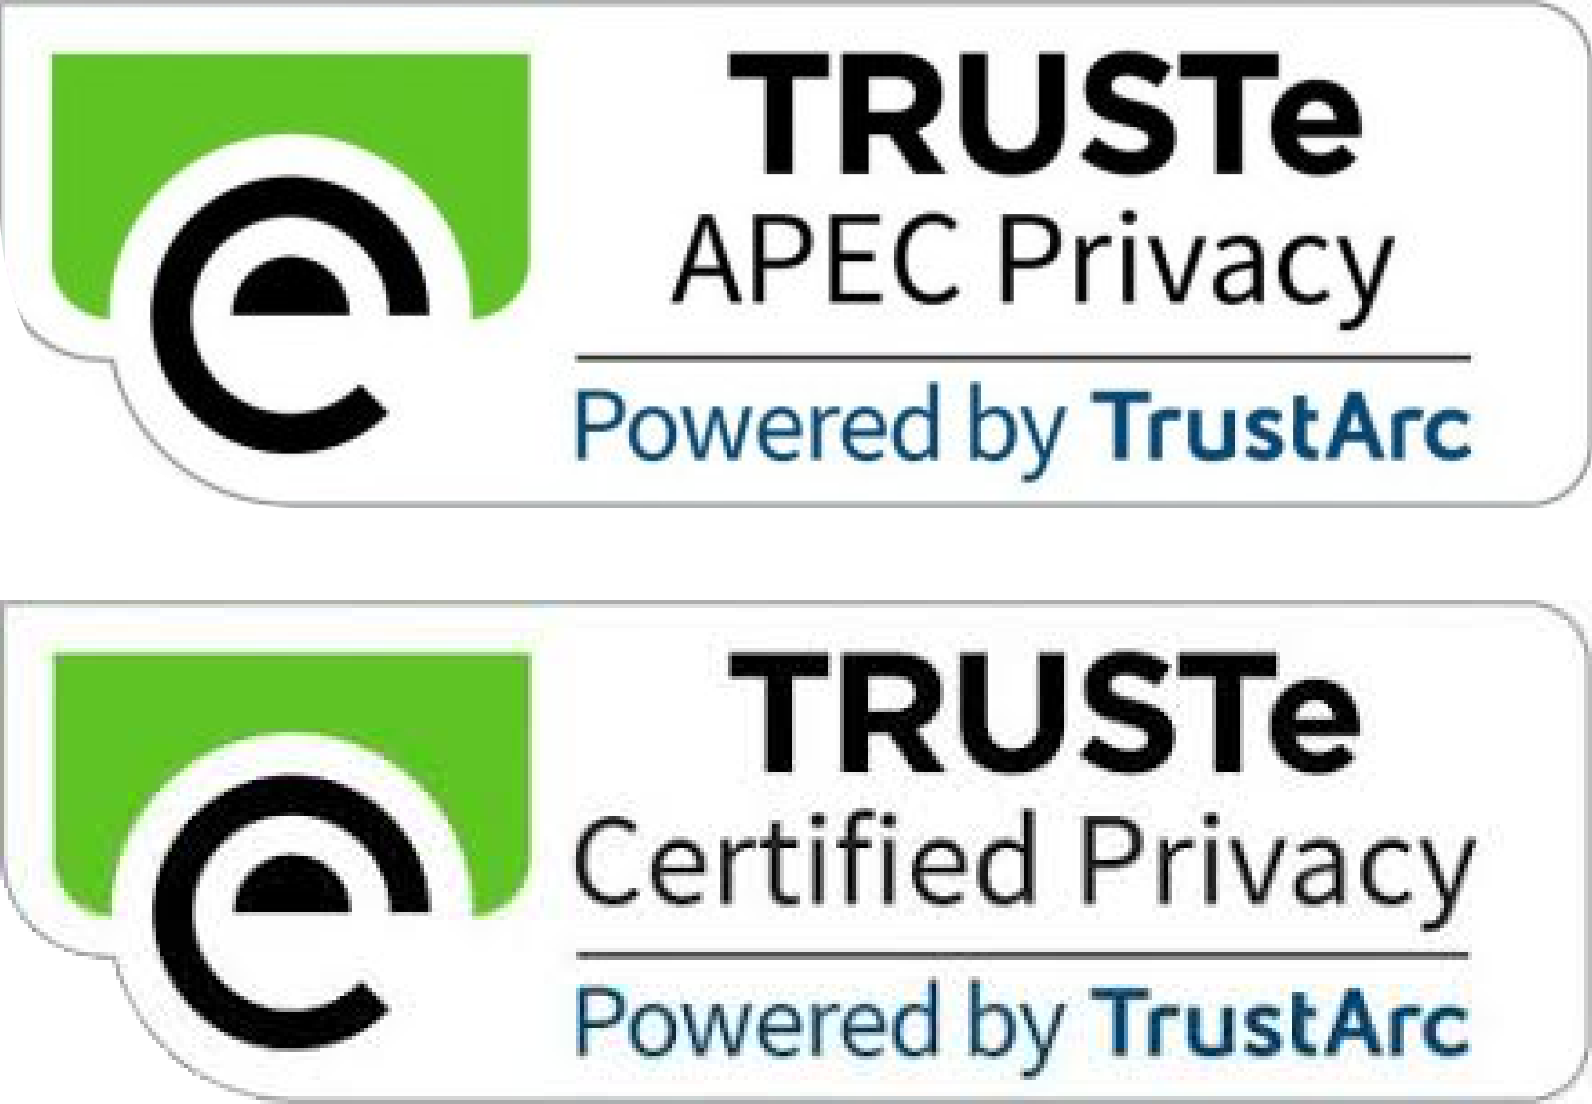 Truste Apec Processor & Certified Privacy